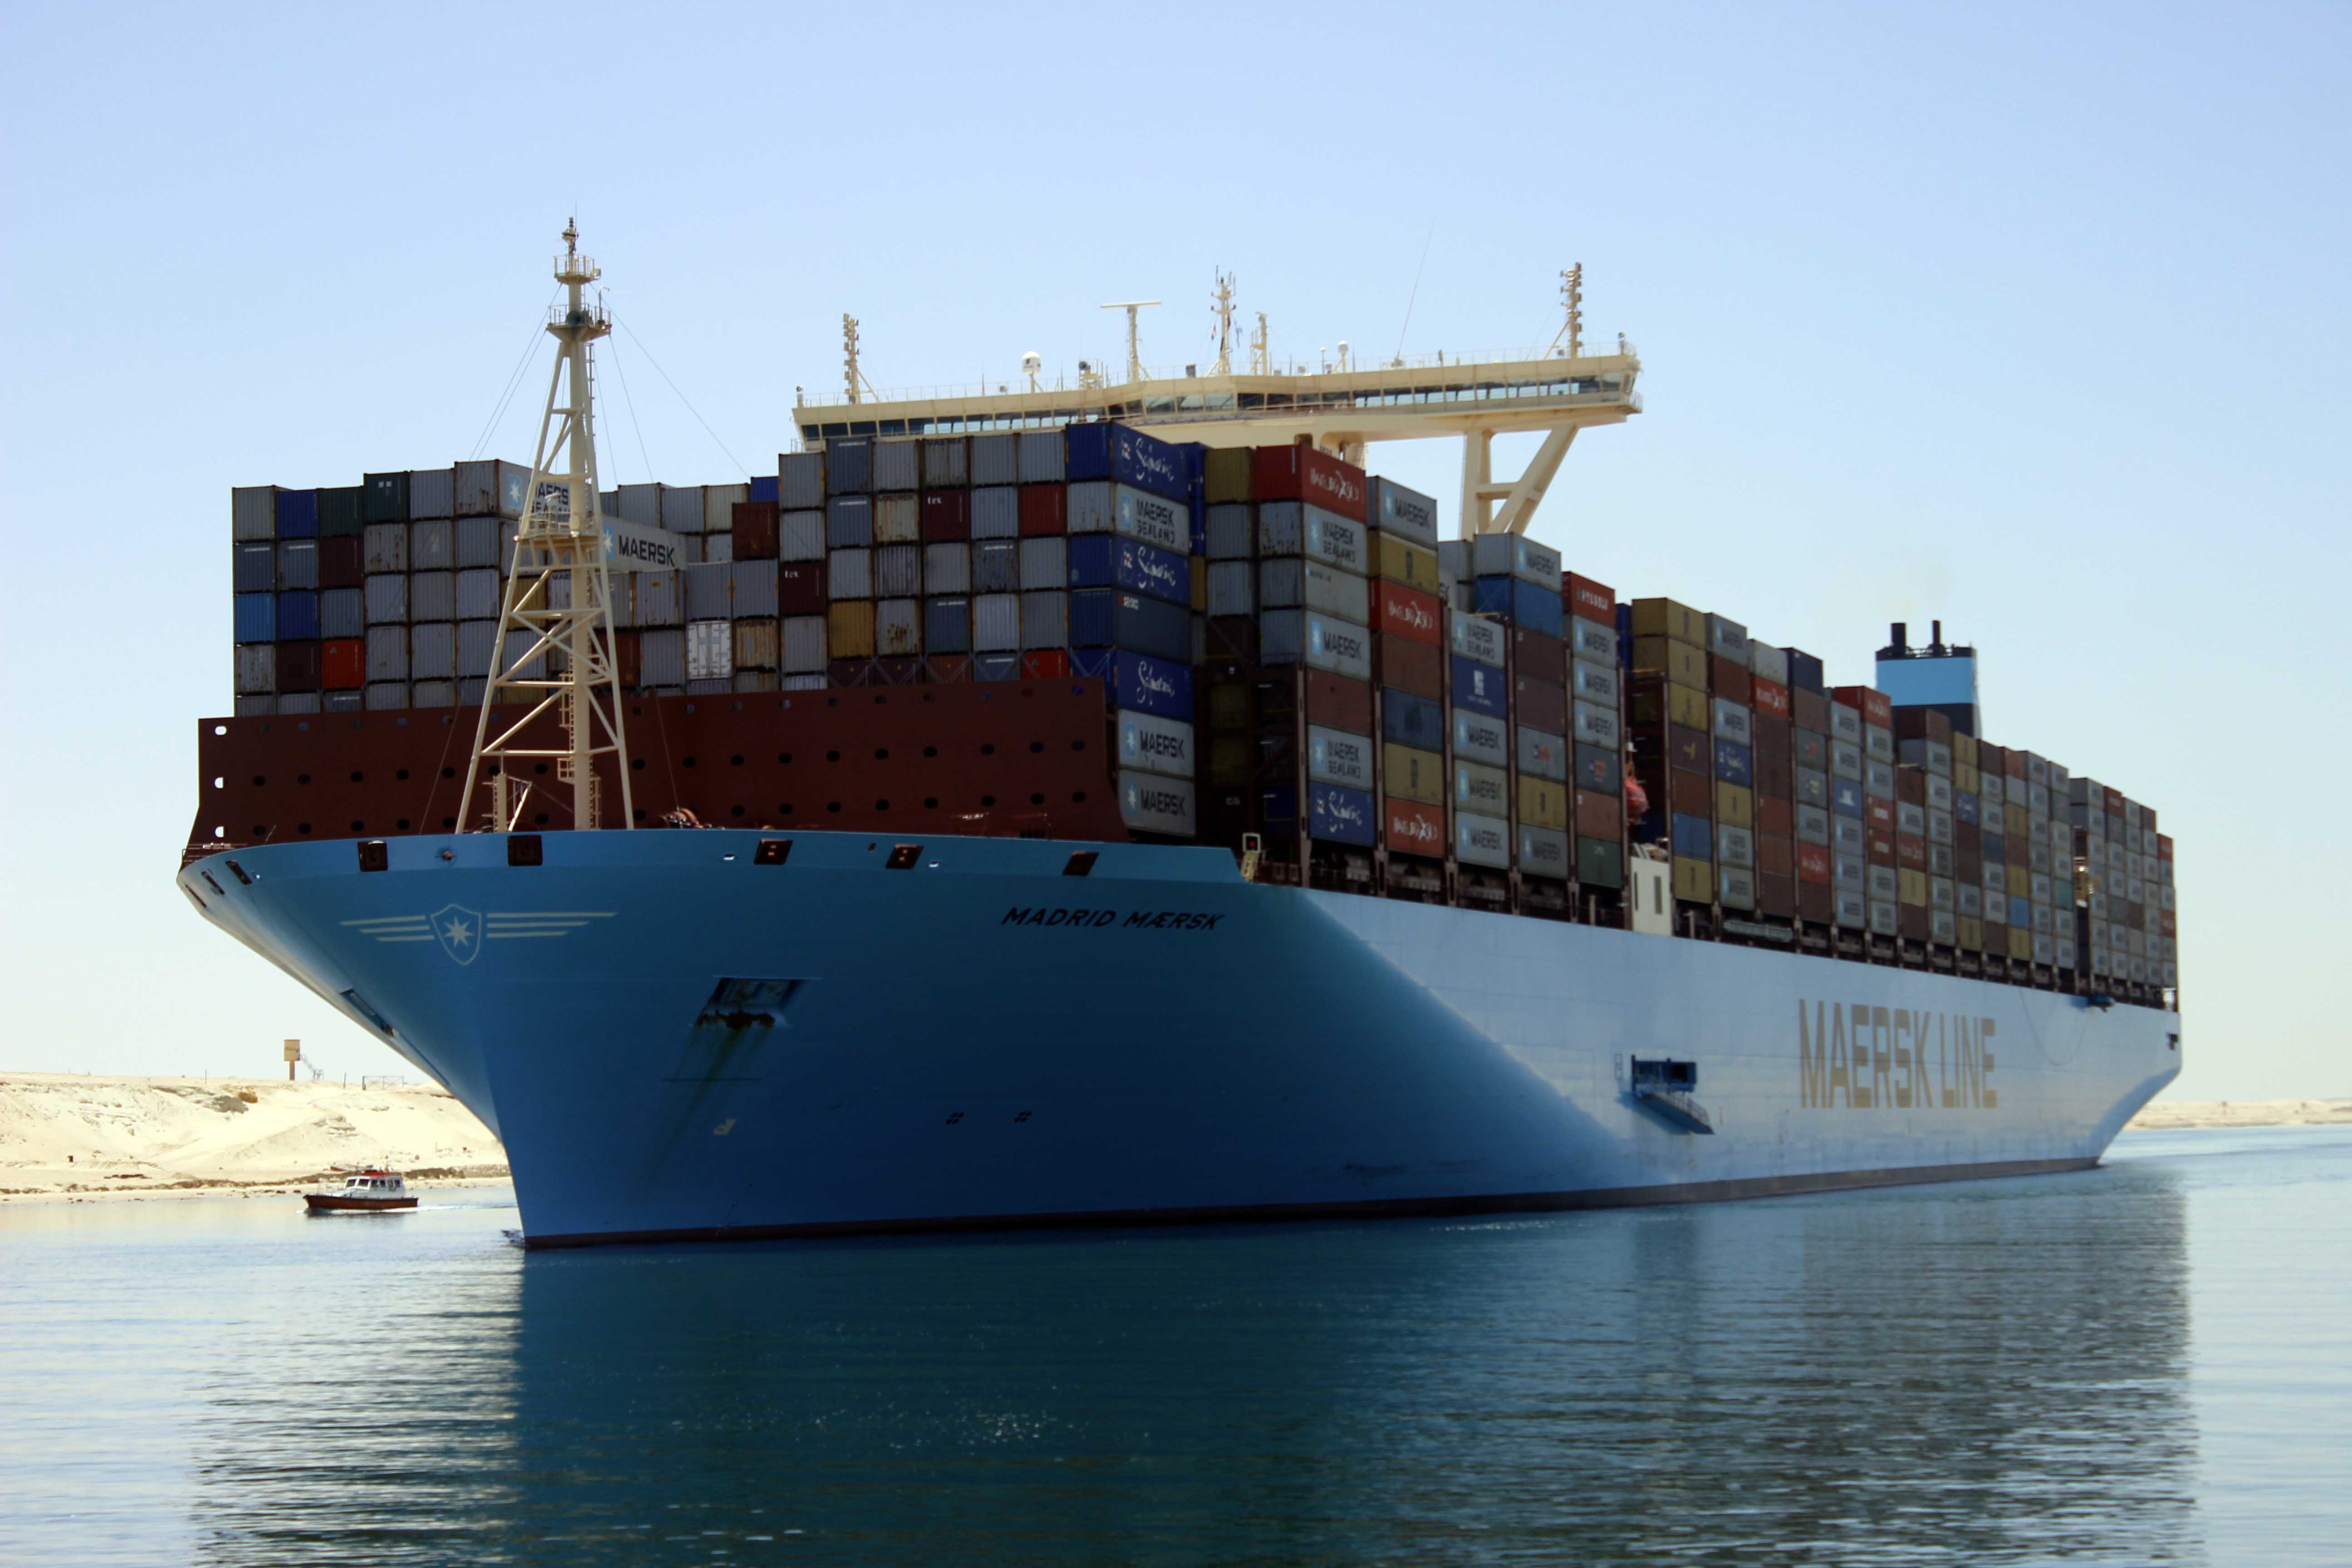 Madrid maersk ثان  أكبر  سفينة  حاويات في  العالم  تعبر  قناة السويس - تصوير  محمد عوض   (12)